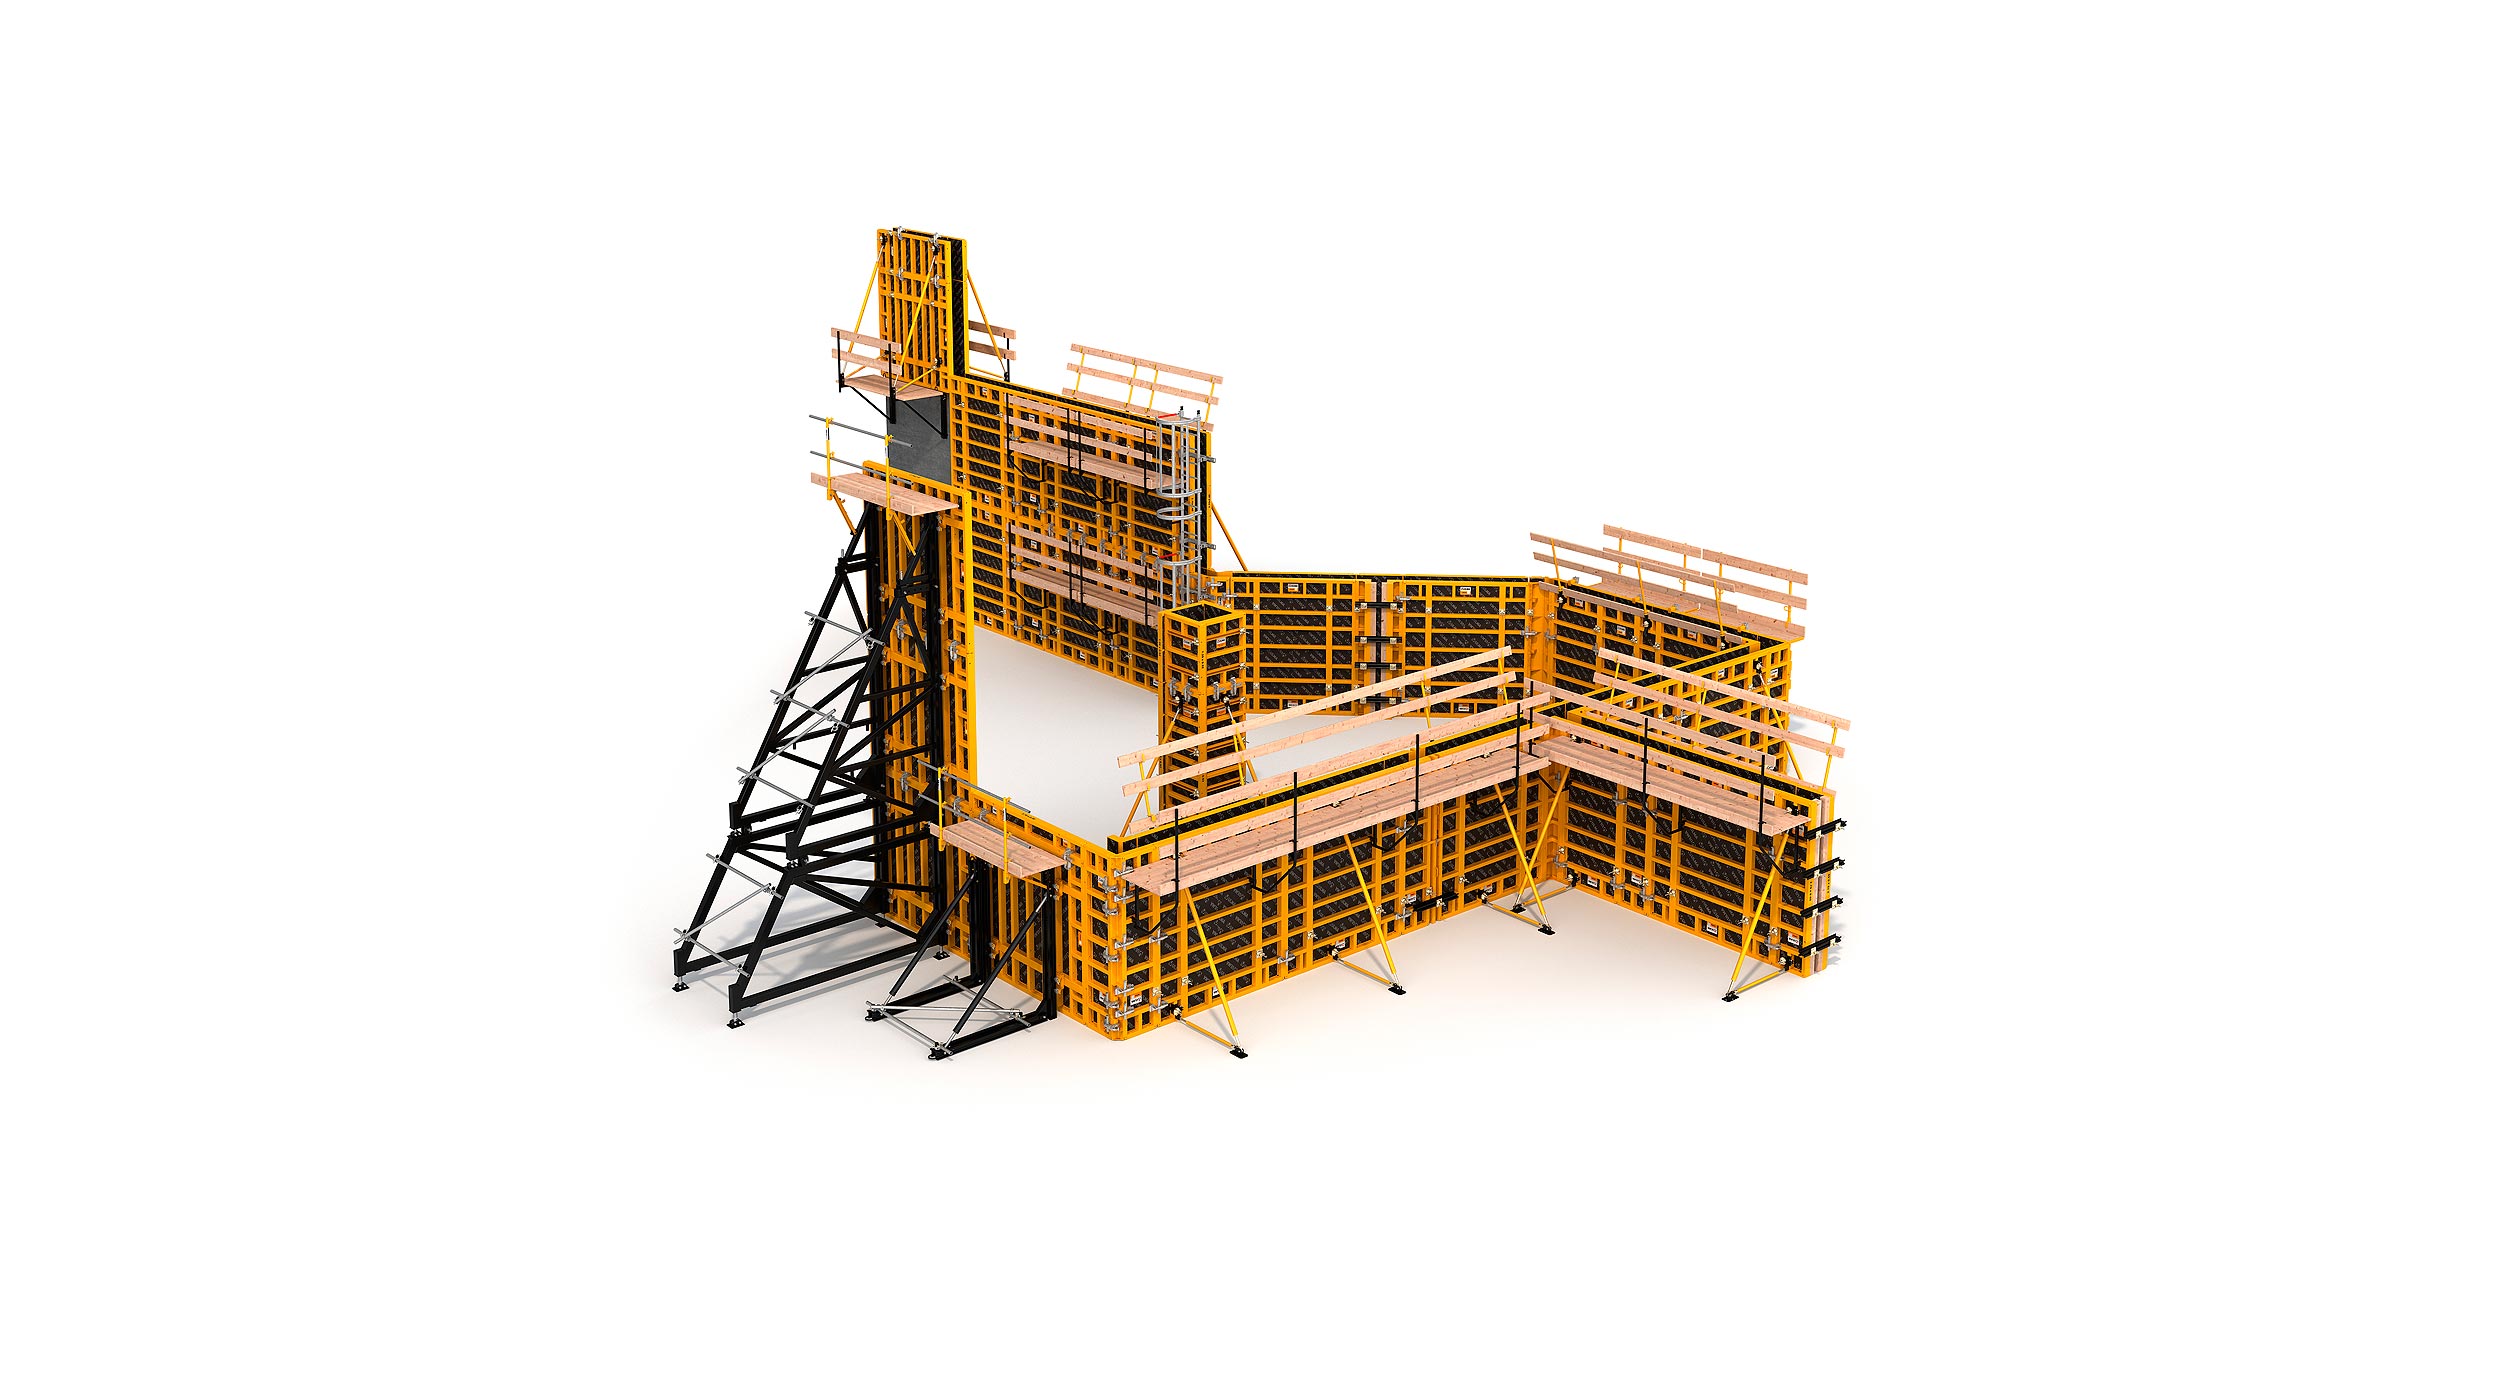 Sistema de cimbra modular para la construcción de todo tipo de estructuras verticales de concreto. Destaca su alto rendimiento con un  mínimo costo en mano de obra.